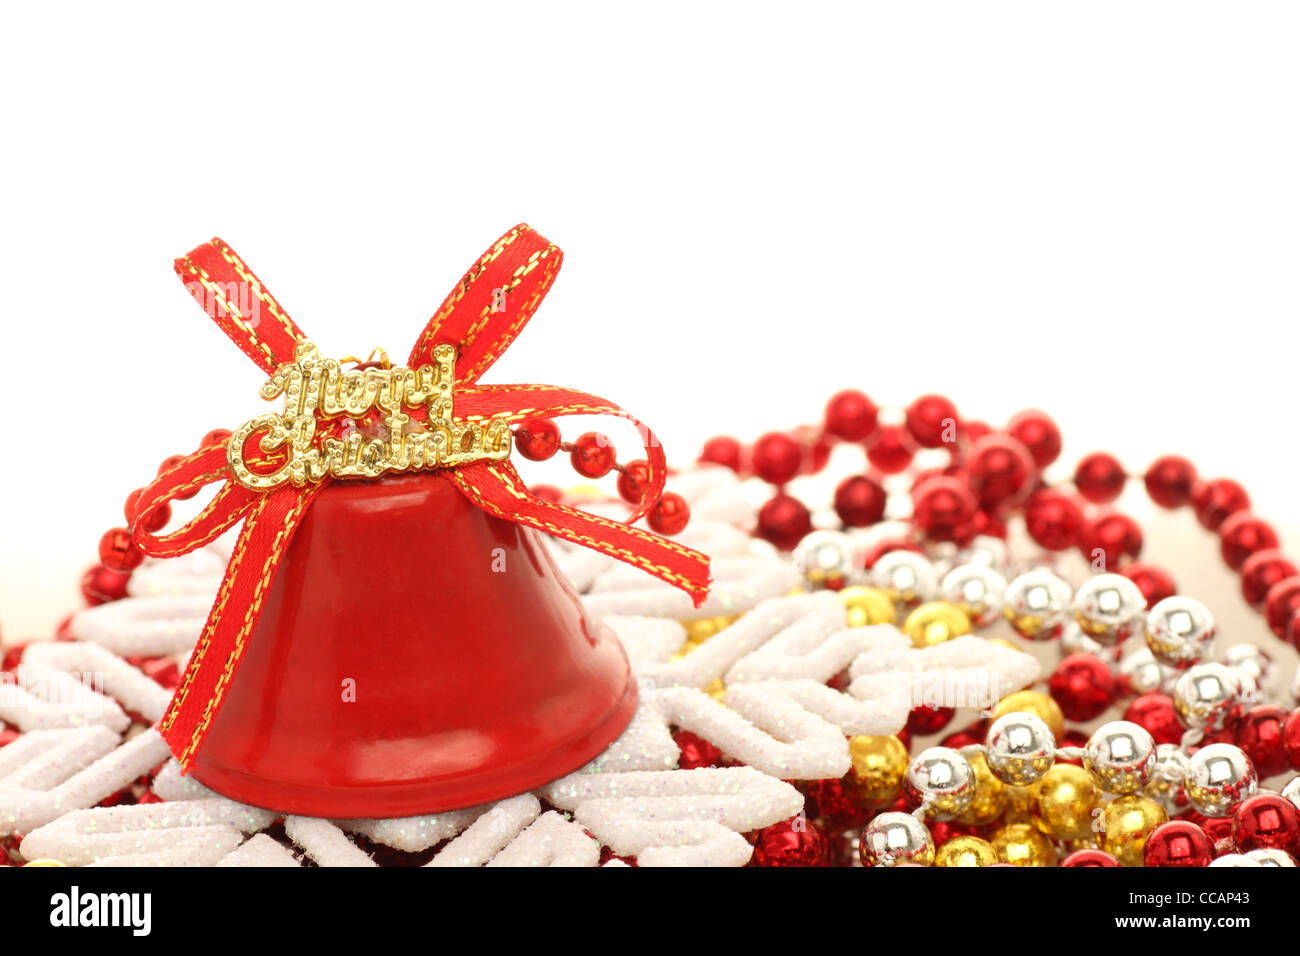 Décorations de Noël : bell sur près d'un flocon beads Banque D'Images